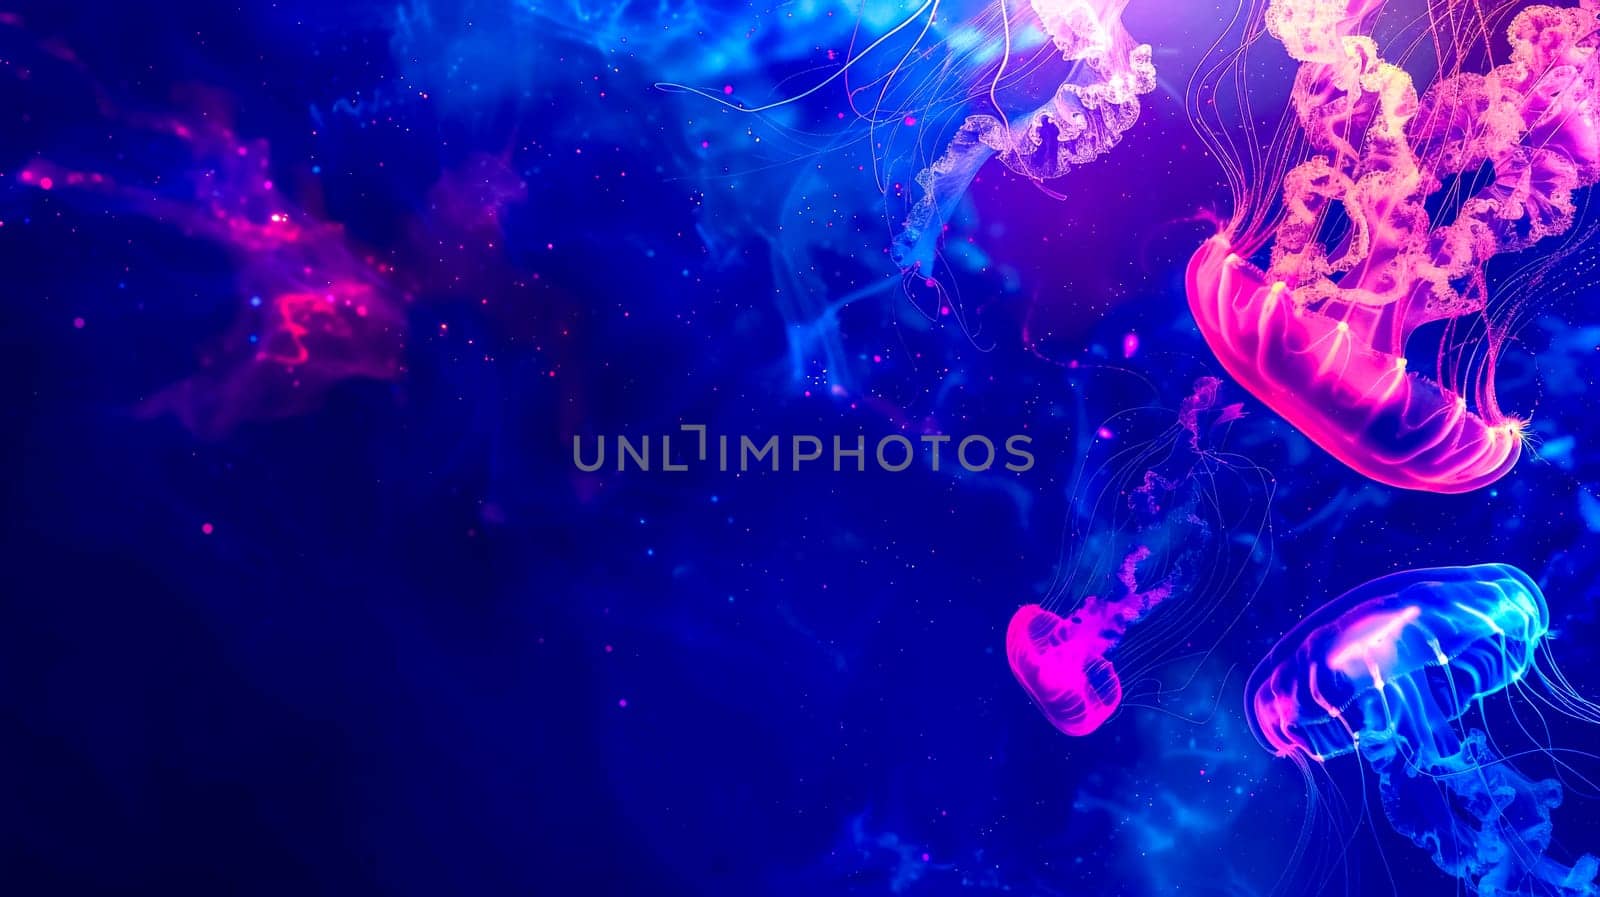 Surreal neon jellyfish underwater scene by Edophoto